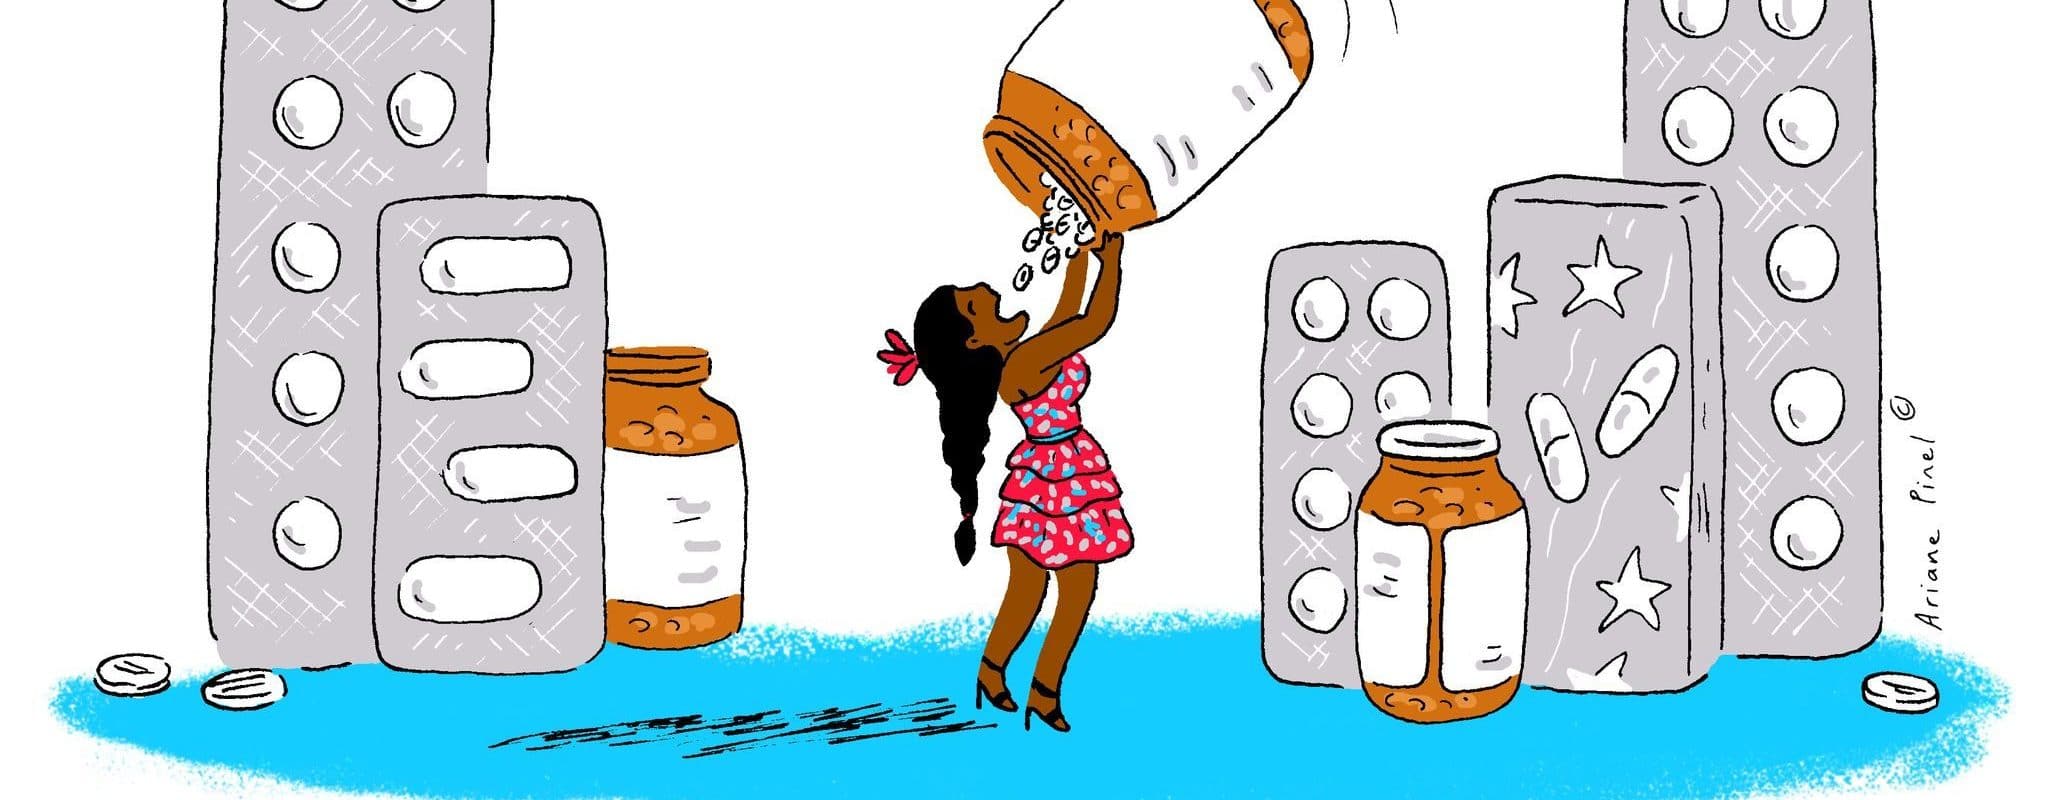 Affaire Naomi Musenga : les failles de la thèse d’une intoxication au paracétamol